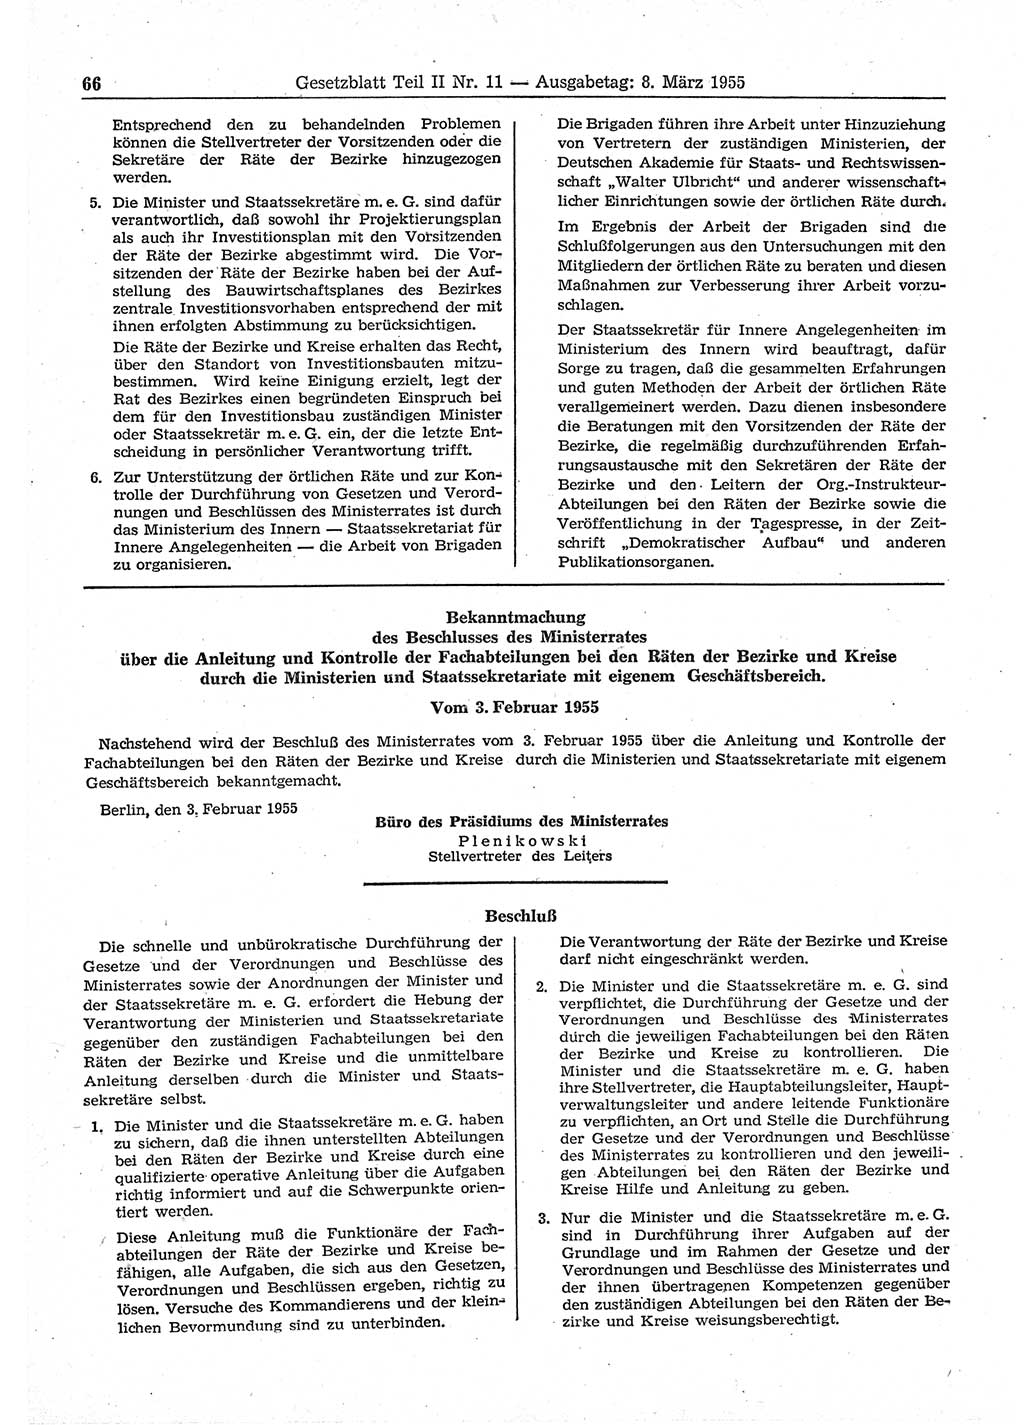 Gesetzblatt (GBl.) der Deutschen Demokratischen Republik (DDR) Teil ⅠⅠ 1955, Seite 66 (GBl. DDR ⅠⅠ 1955, S. 66)